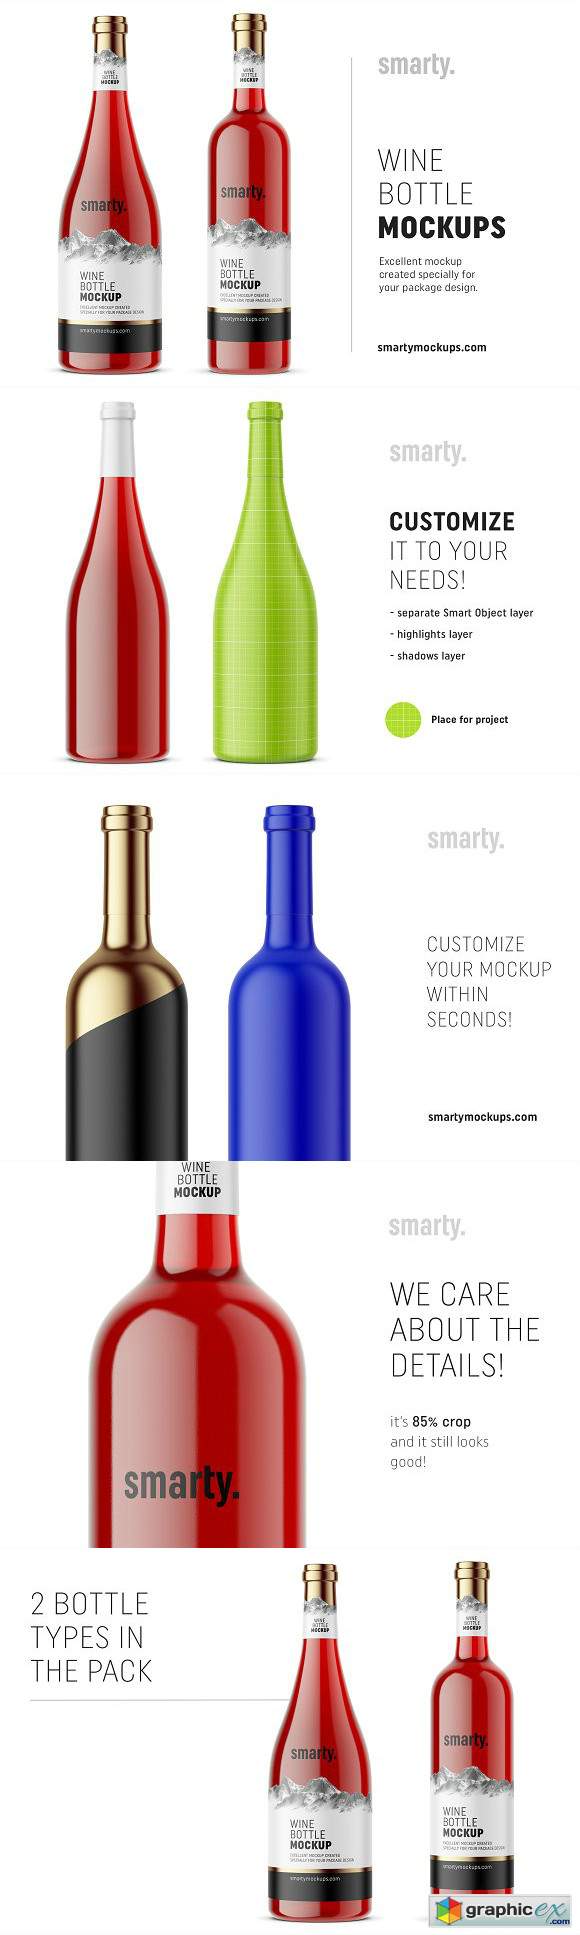 Red wine bottle mockups